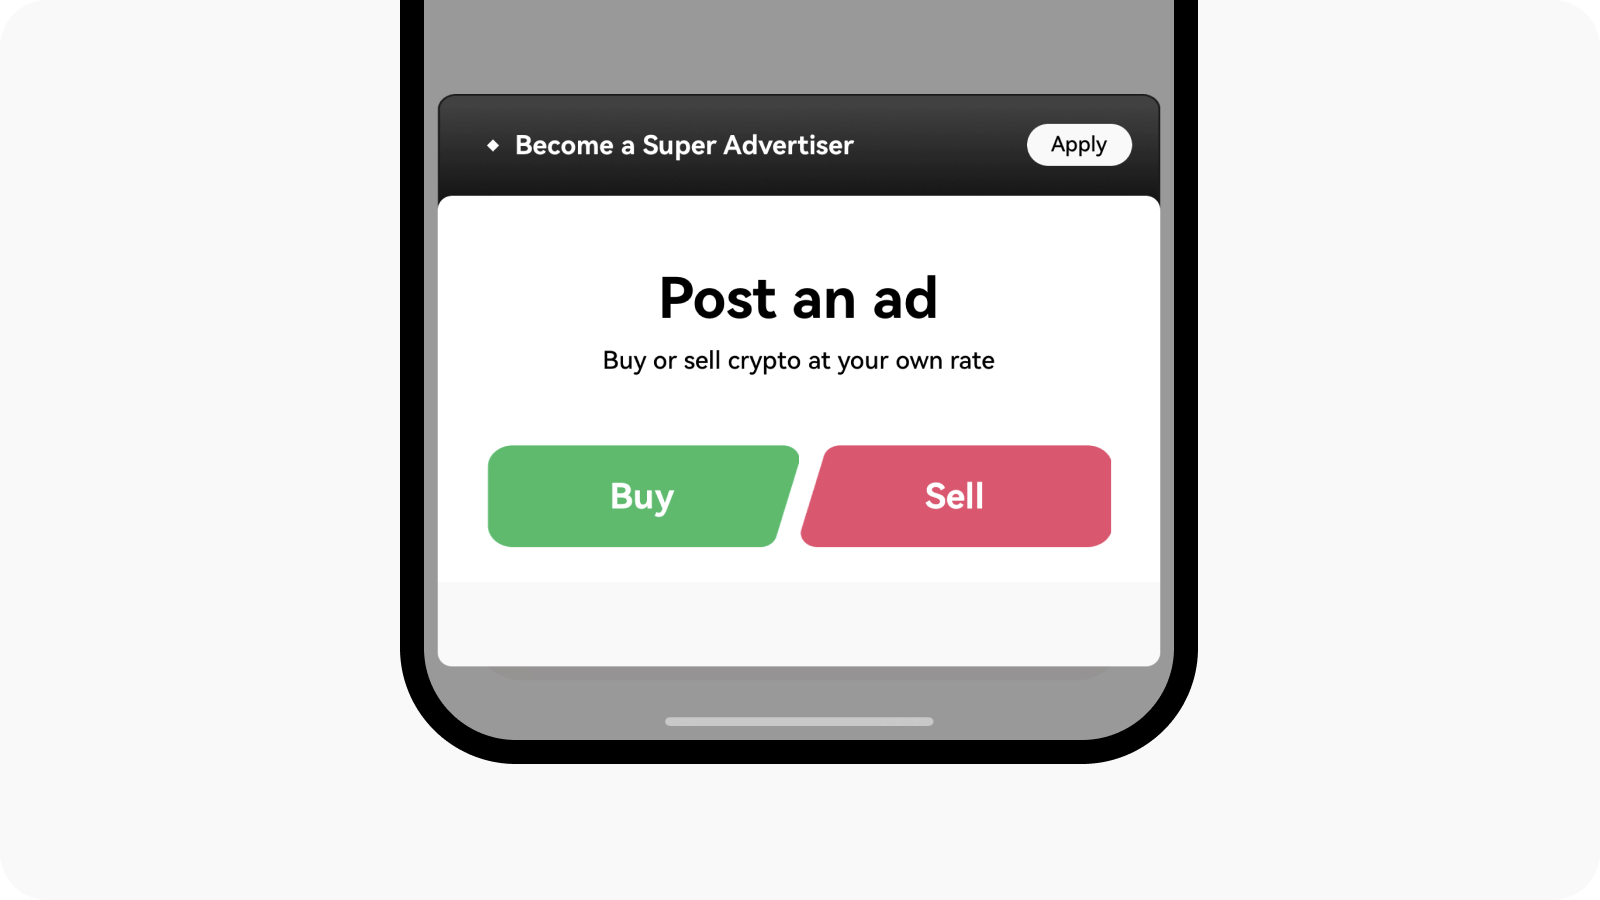 Aplicați pentru a deveni utilizator care publică anunțuri